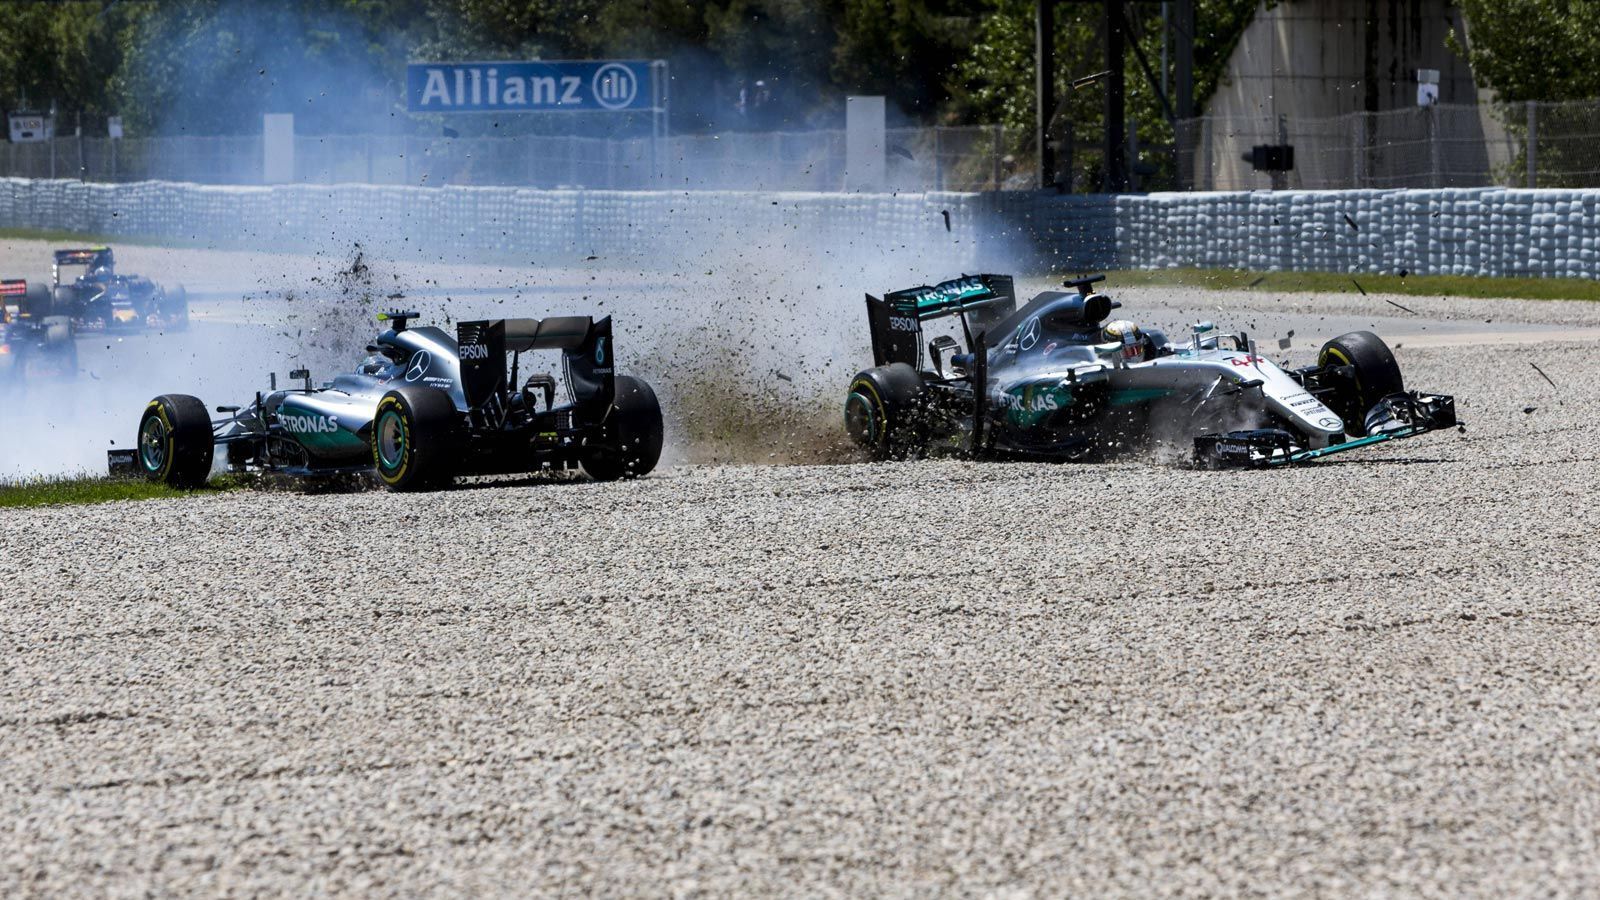 
                <strong>Crash in Spanien!</strong><br>
                Höhepunkt ihrer Rivalität war der Zusammenstoß in Spanien. Kurz nach dem Start versuchte Hamilton seinen Teamkollegen zu überholen, kam dabei von der Strecke ab und crashte in Rosbergs Auto. Beide schieden somit aus. Das Rennen gewann Max Verstappen, der das erste Mal im Red Bull saß und als jüngster Grand-Prix-Sieger in die Geschichte einging.
              